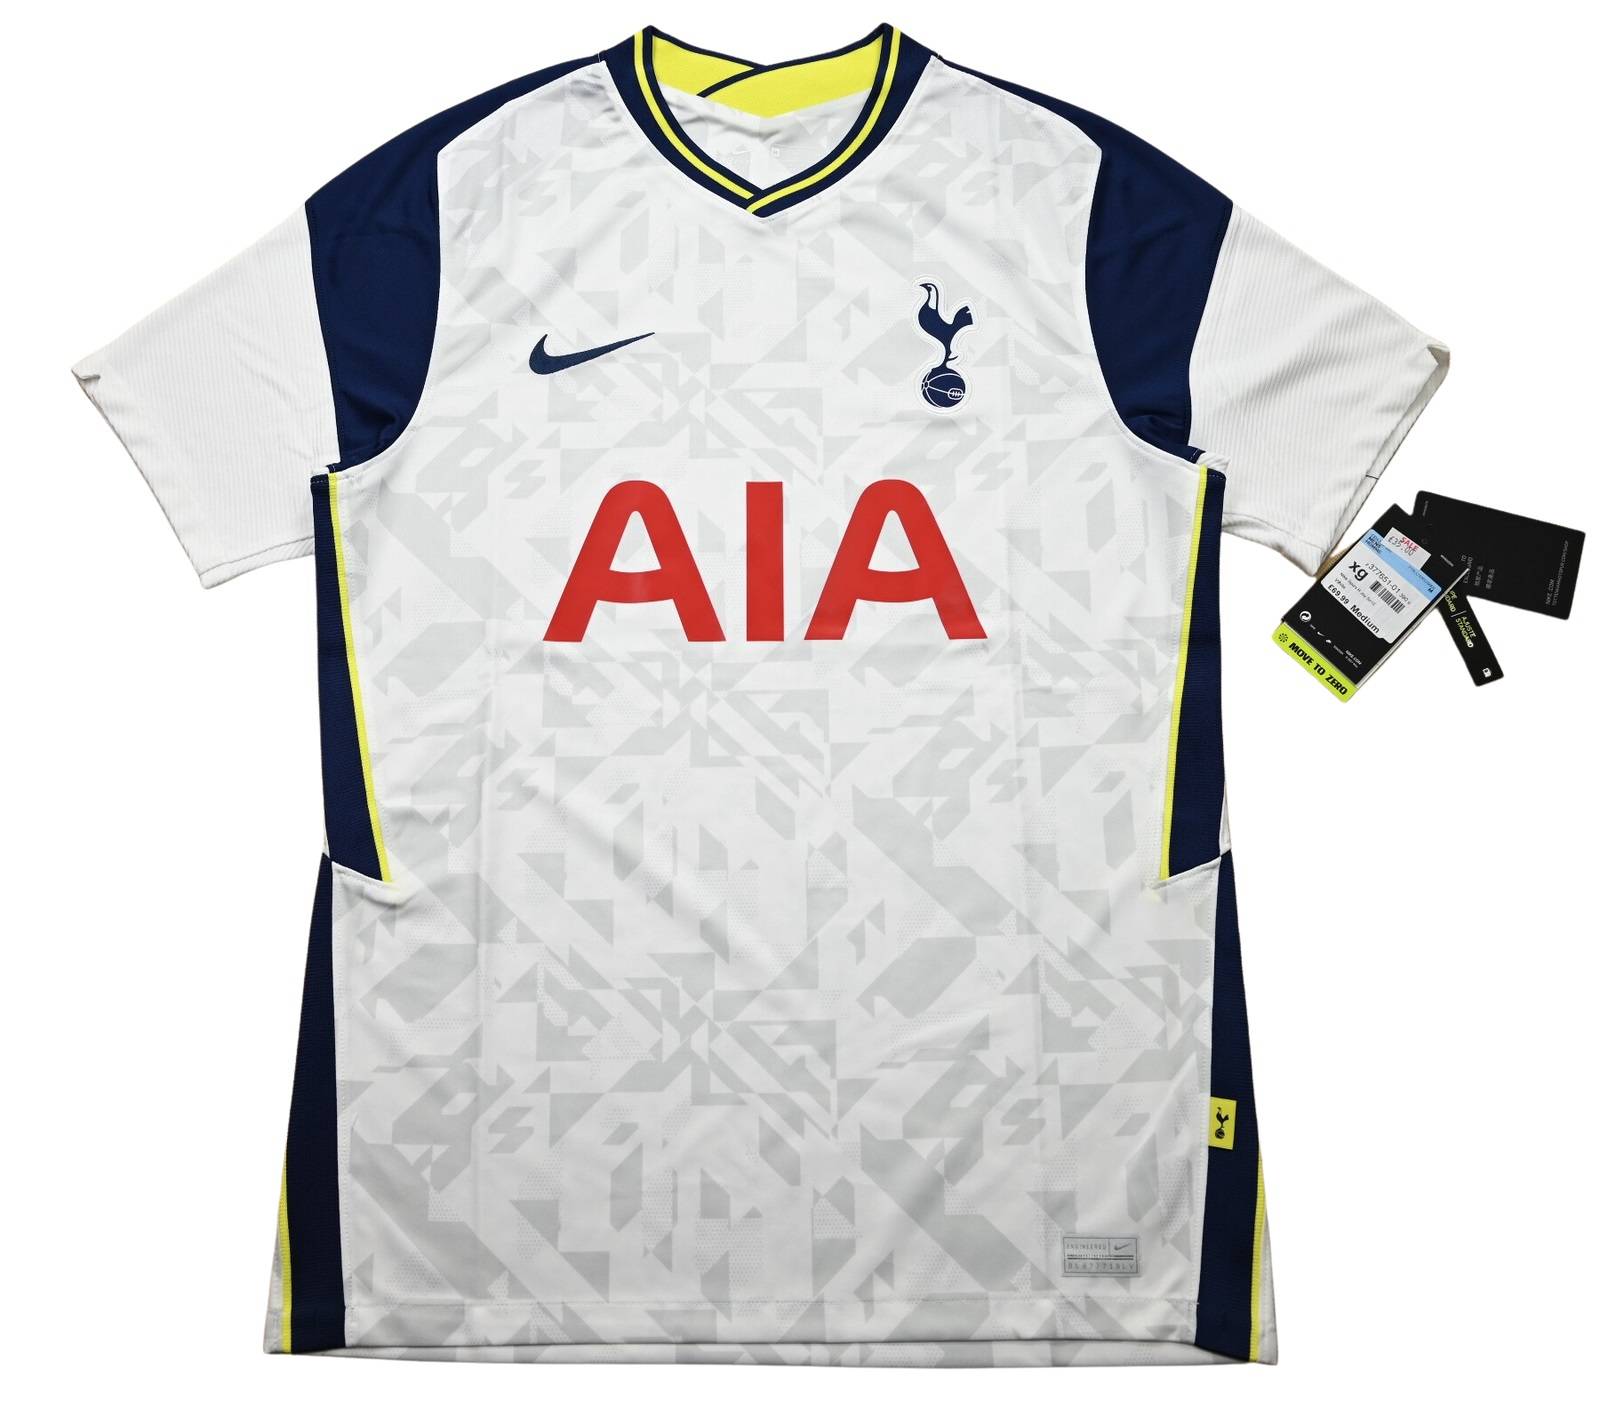 Tottenham Hotspur 2020-21 Home Kit